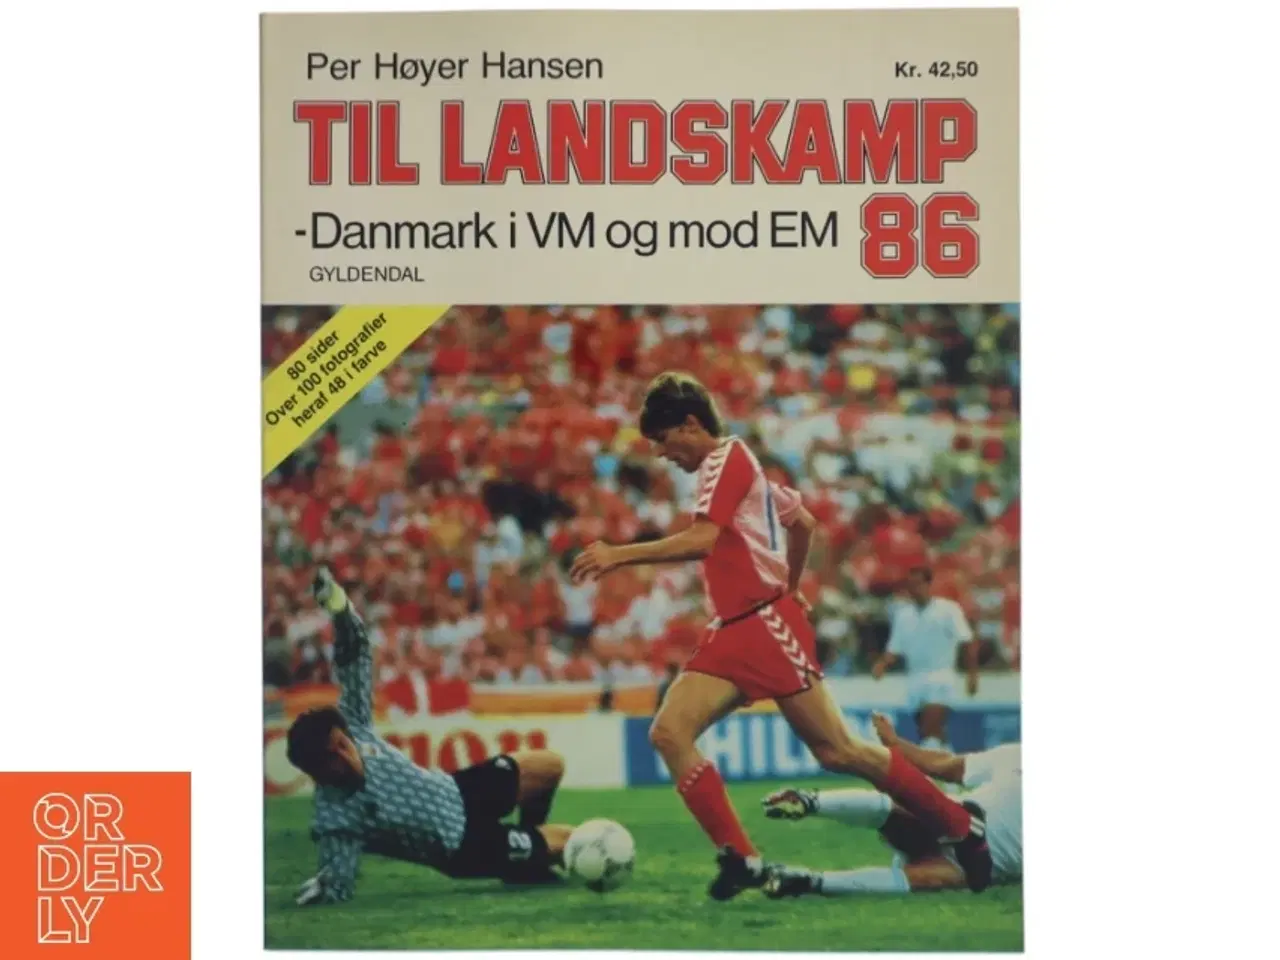 Billede 1 - Fodboldbog - Til landskamp 86, Per Høyer Hansen fra Gyldendal